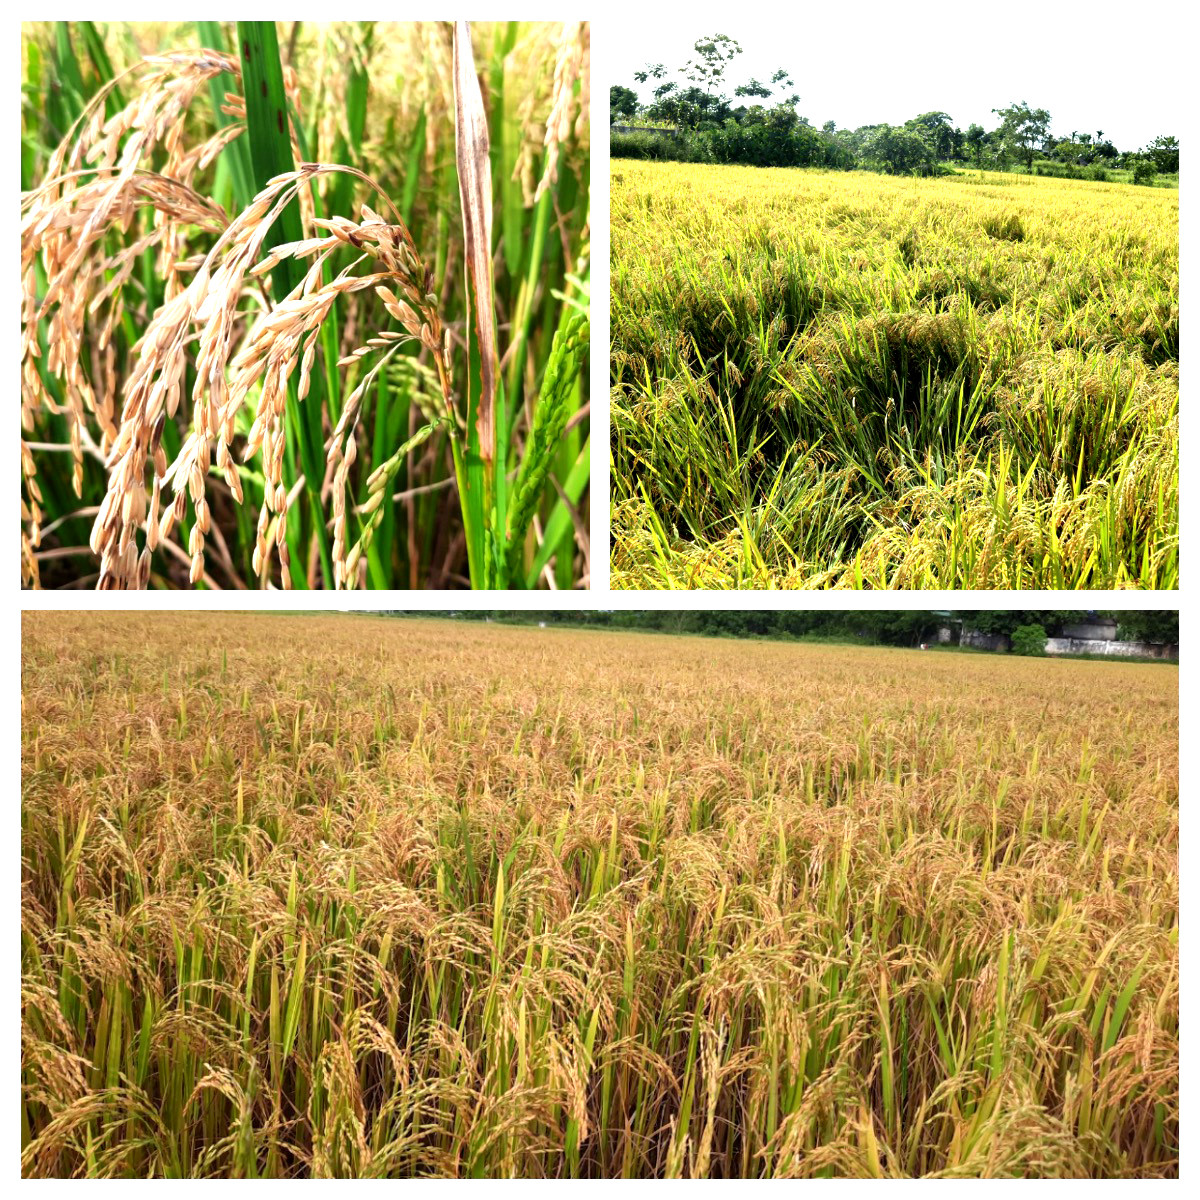 Ở nhiều vùng đồng, lúa đã chín rũ nhưng chưa máy gặt chưa về kịp. Ảnh: Thanh Phúc